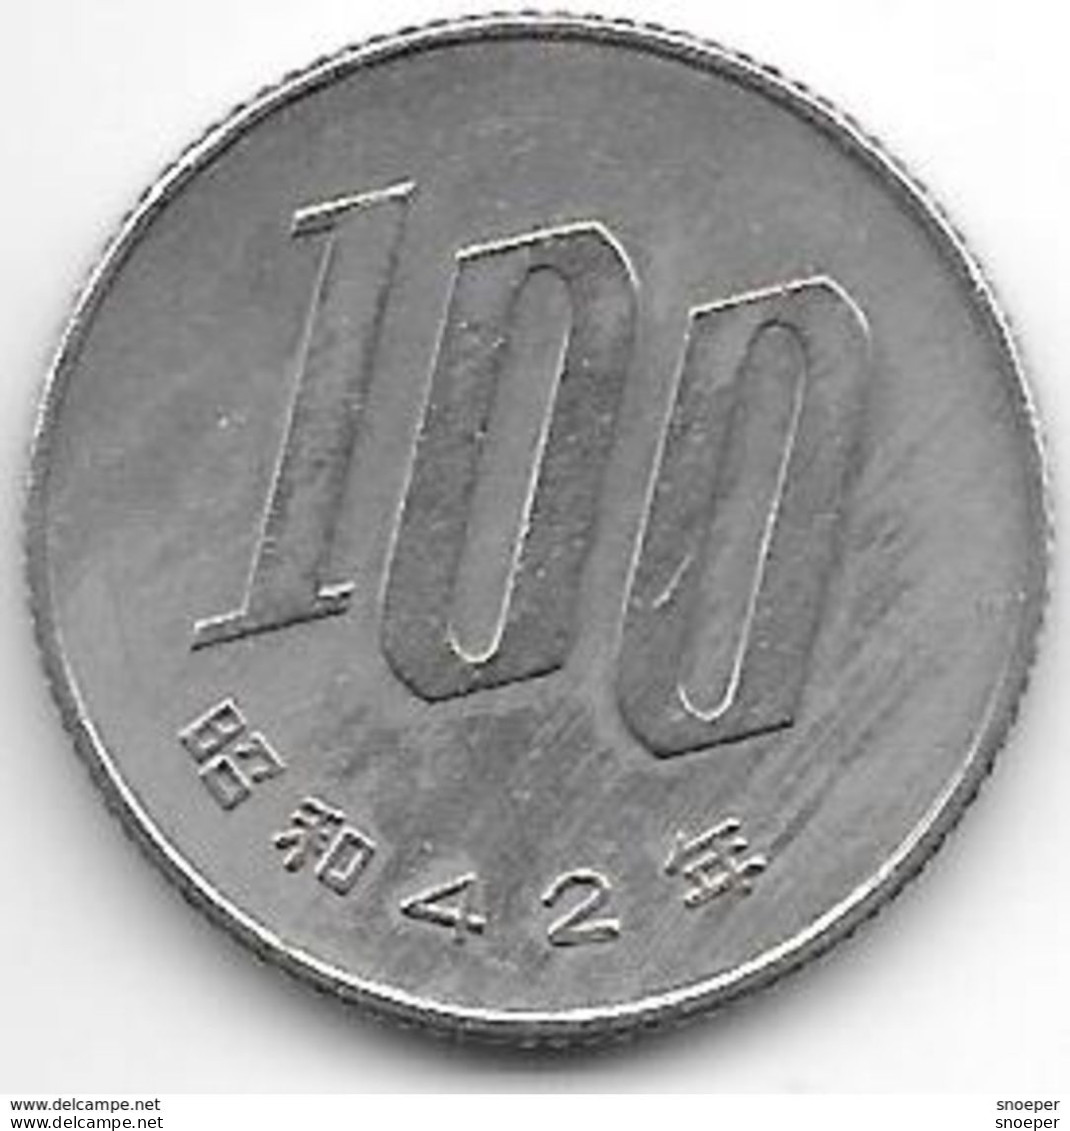 *japan 100 Yen  Year 42 = 1967  Km 82  Xf - Japan